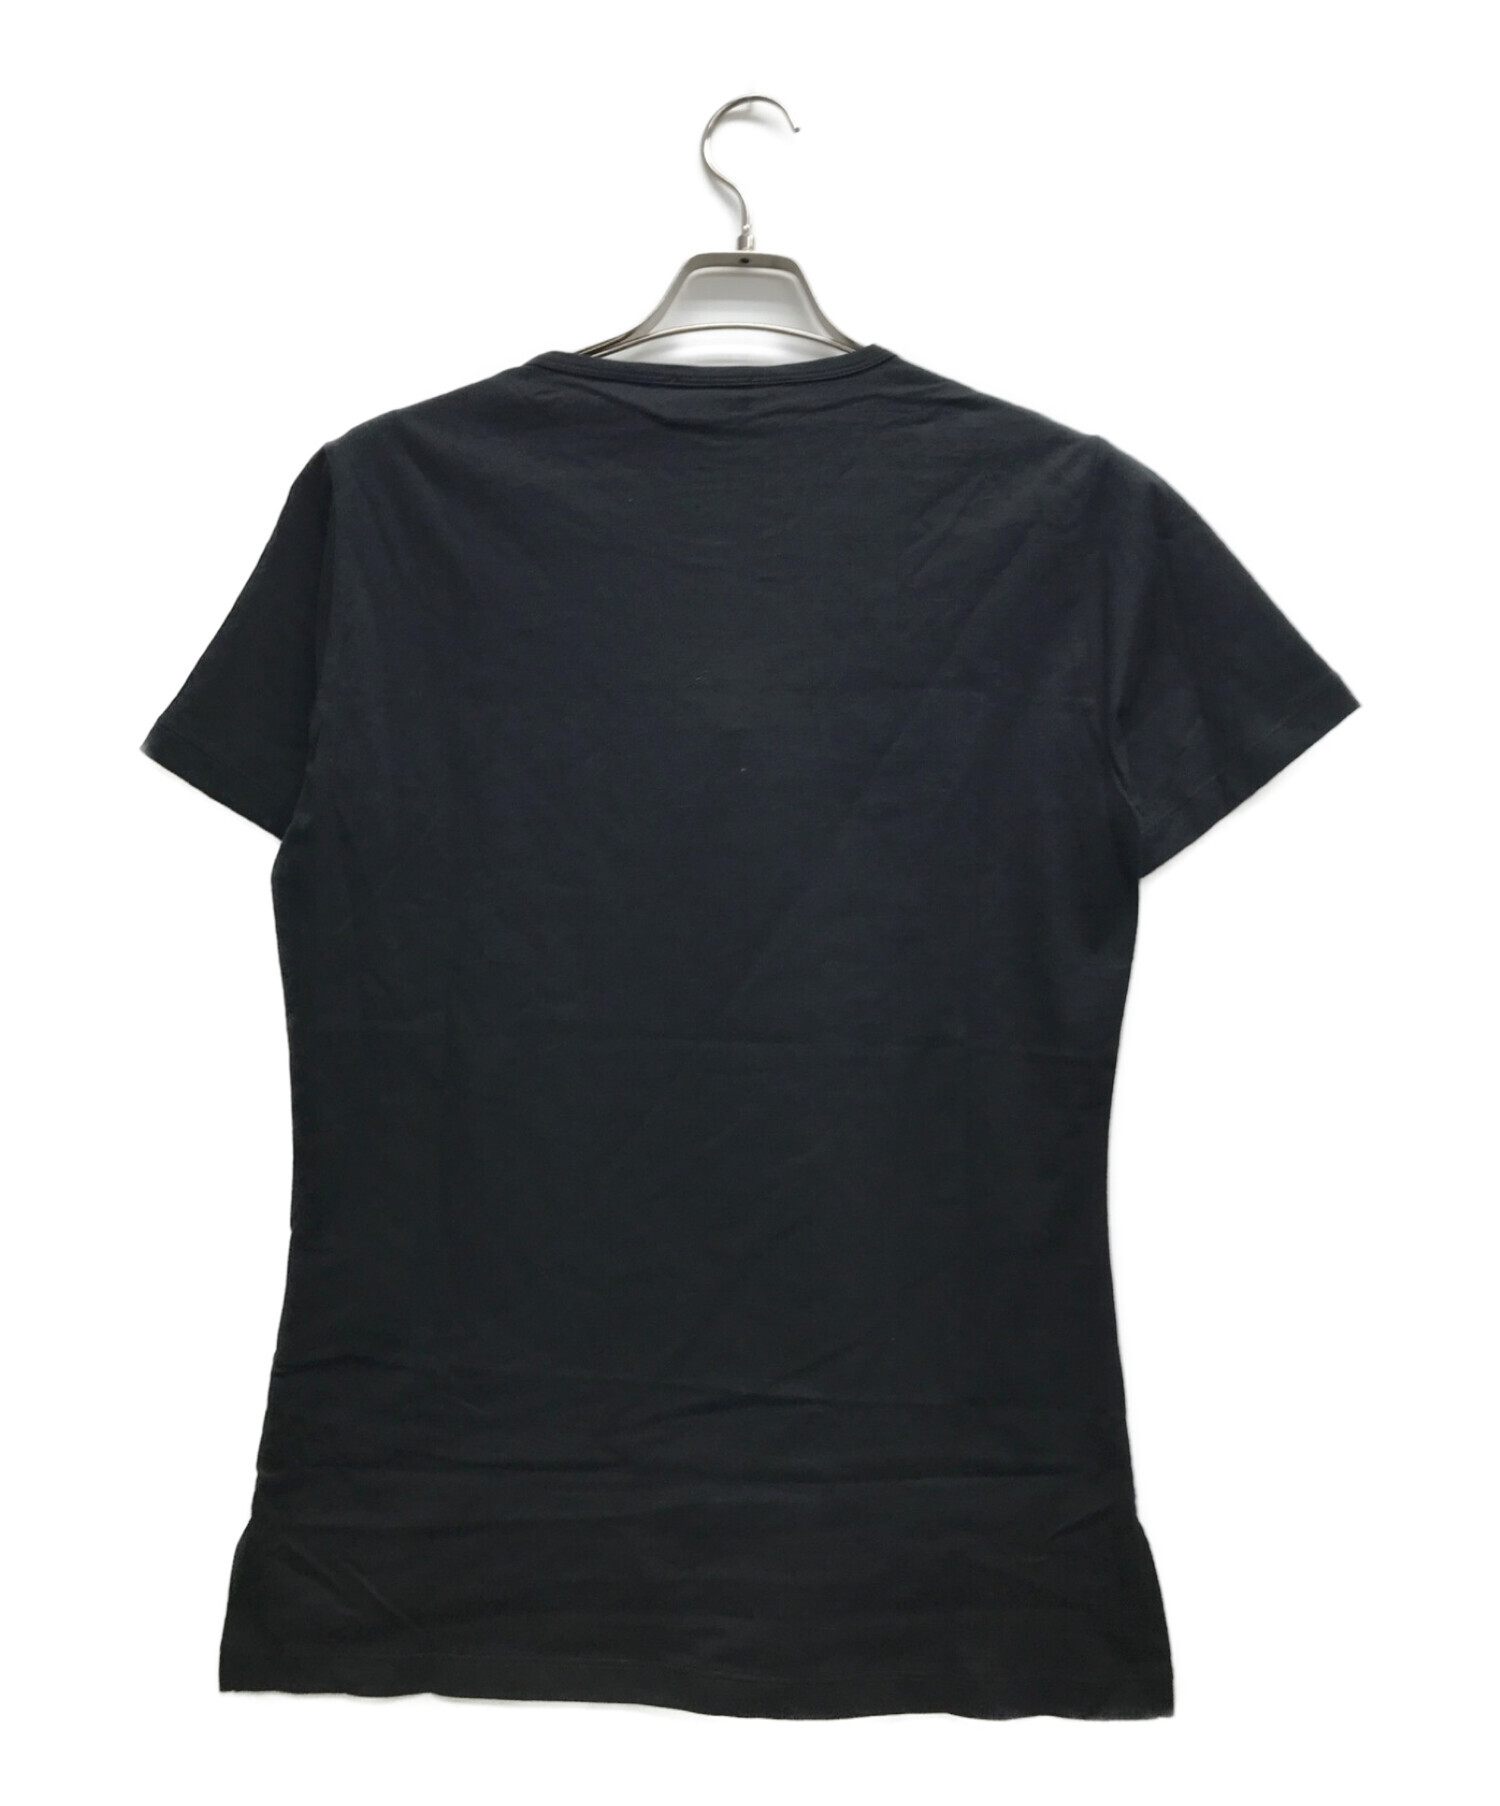 Vivienne Westwood man (ヴィヴィアン ウェストウッド マン) フローラルオーブ Tシャツ ブラック サイズ:46